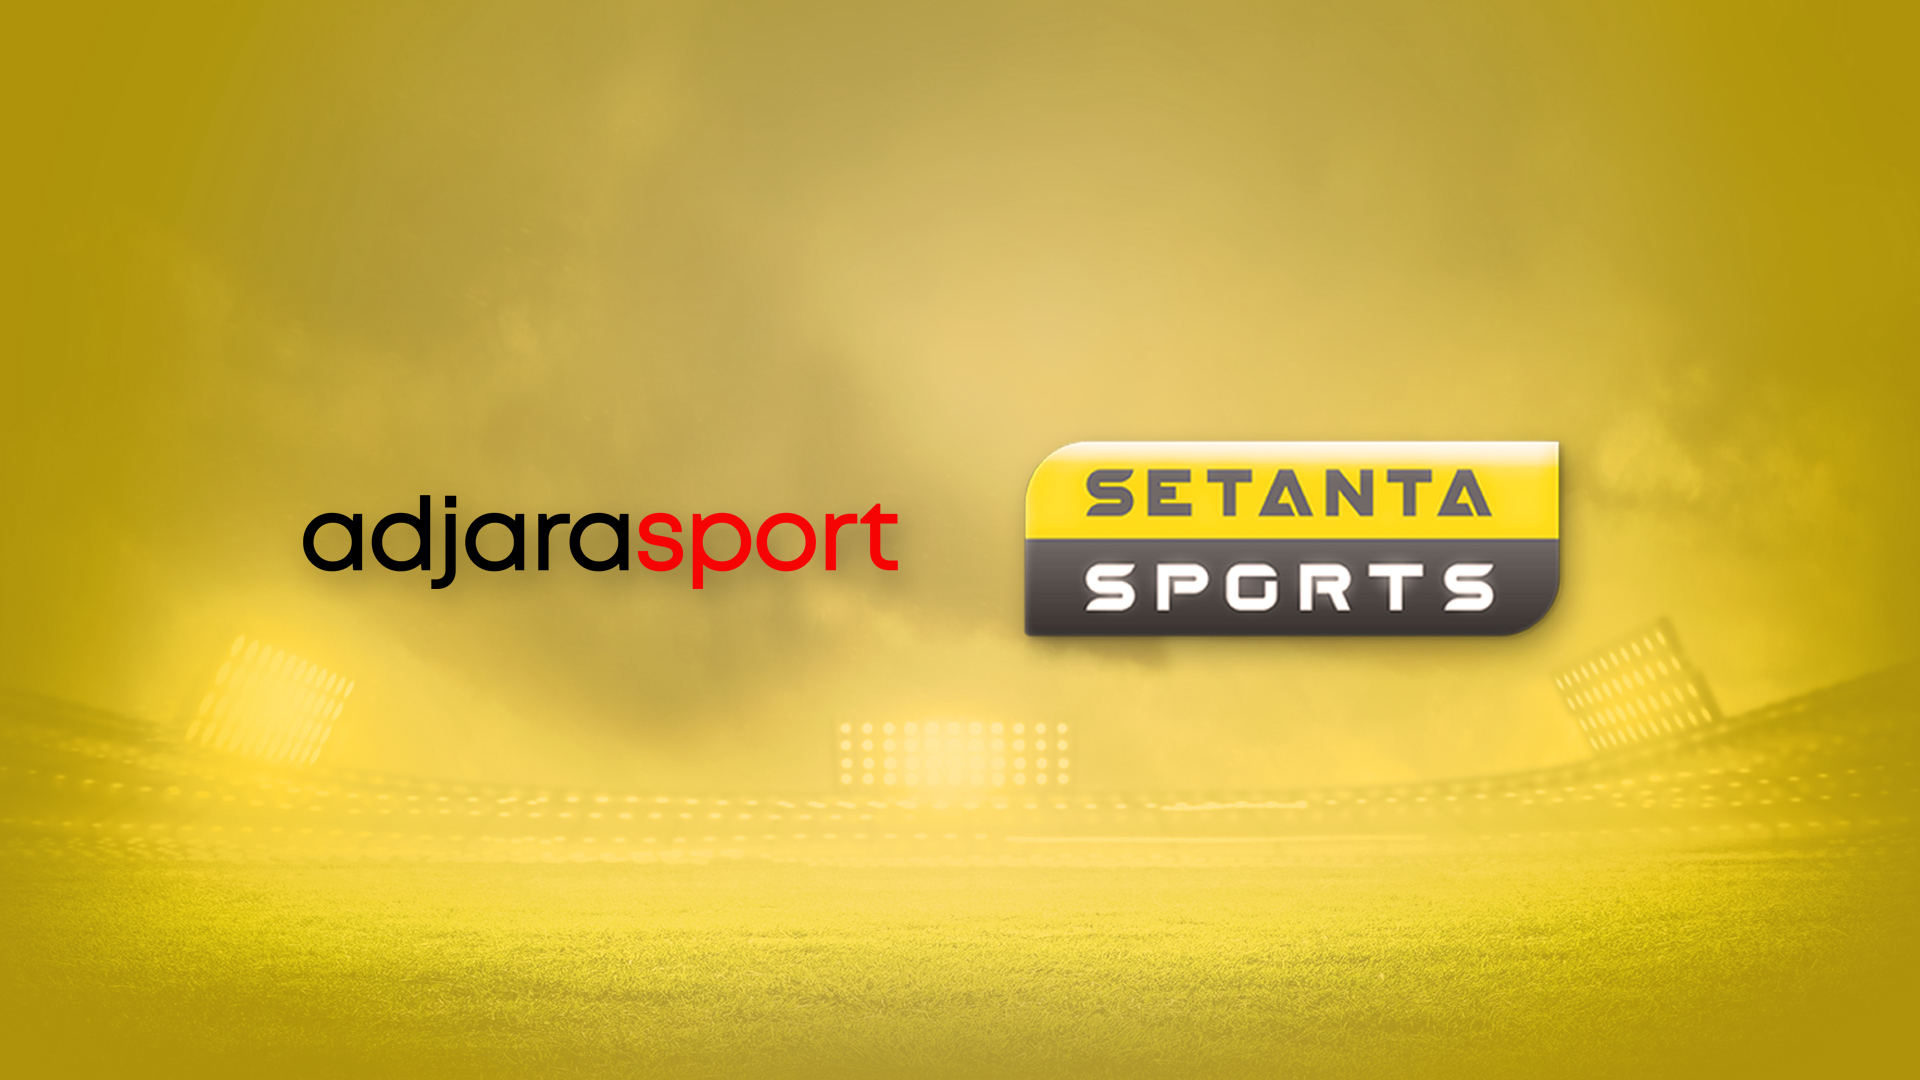 Setanta sport eurasia. Сетанта спорт. Сетанта спорт 1. Канал Setanta Sports. Сетанта спорт 2.